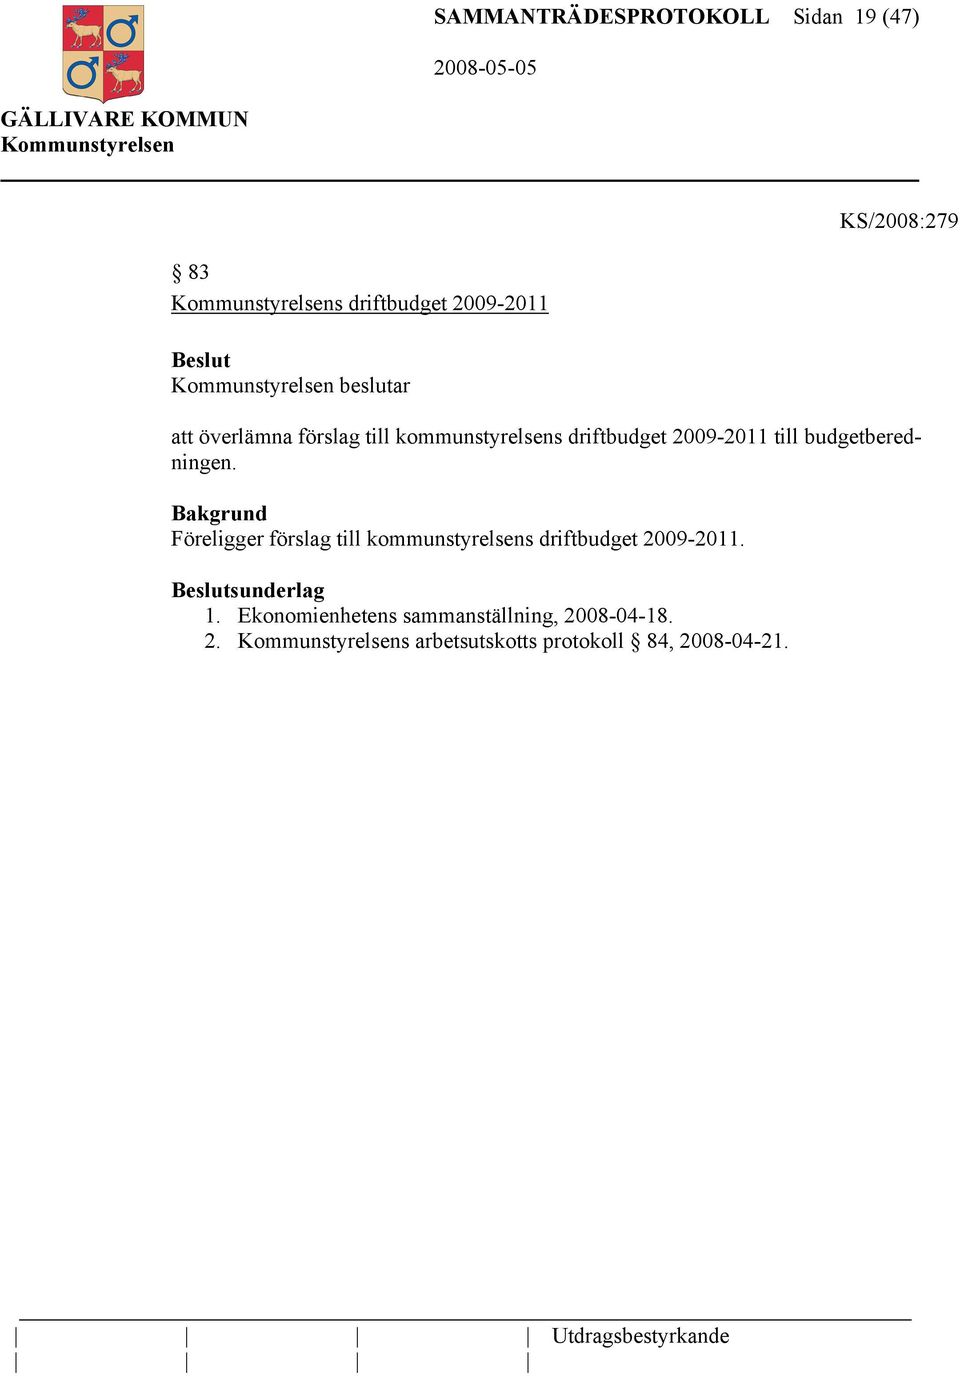 Föreligger förslag till kommunstyrelsens driftbudget 2009-2011. sunderlag 1.